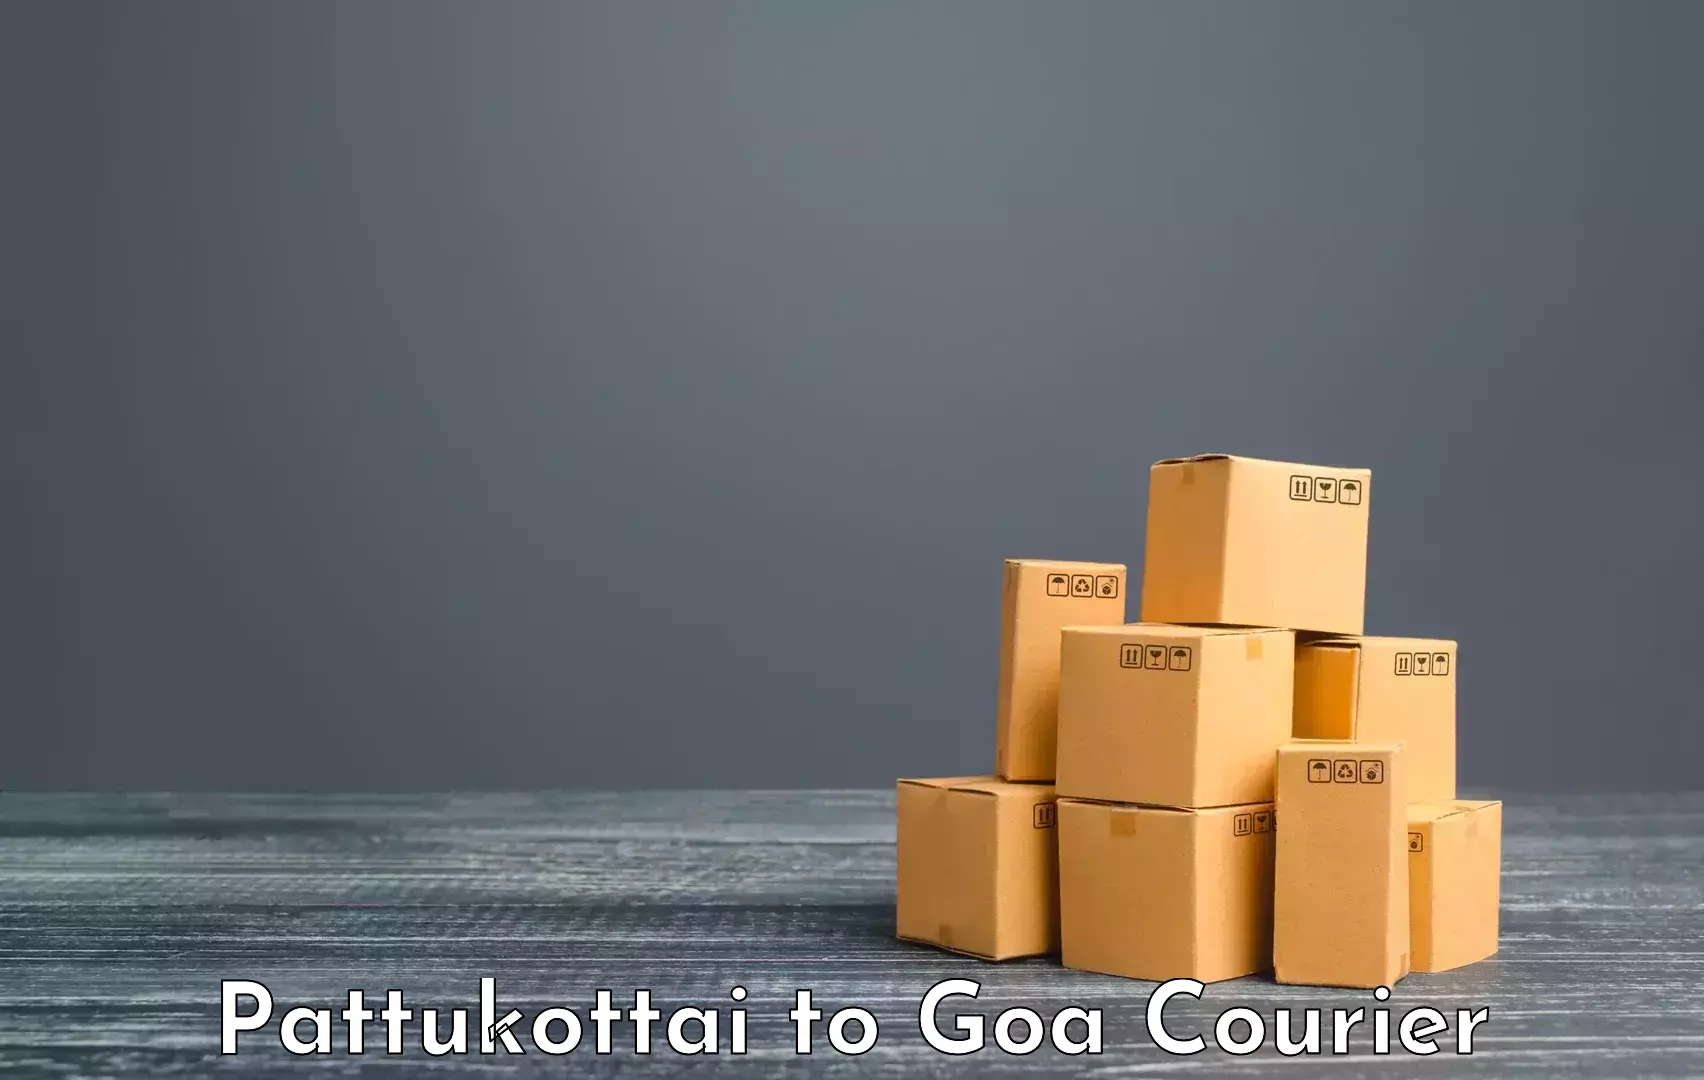 Holiday season luggage delivery Pattukottai to IIT Goa